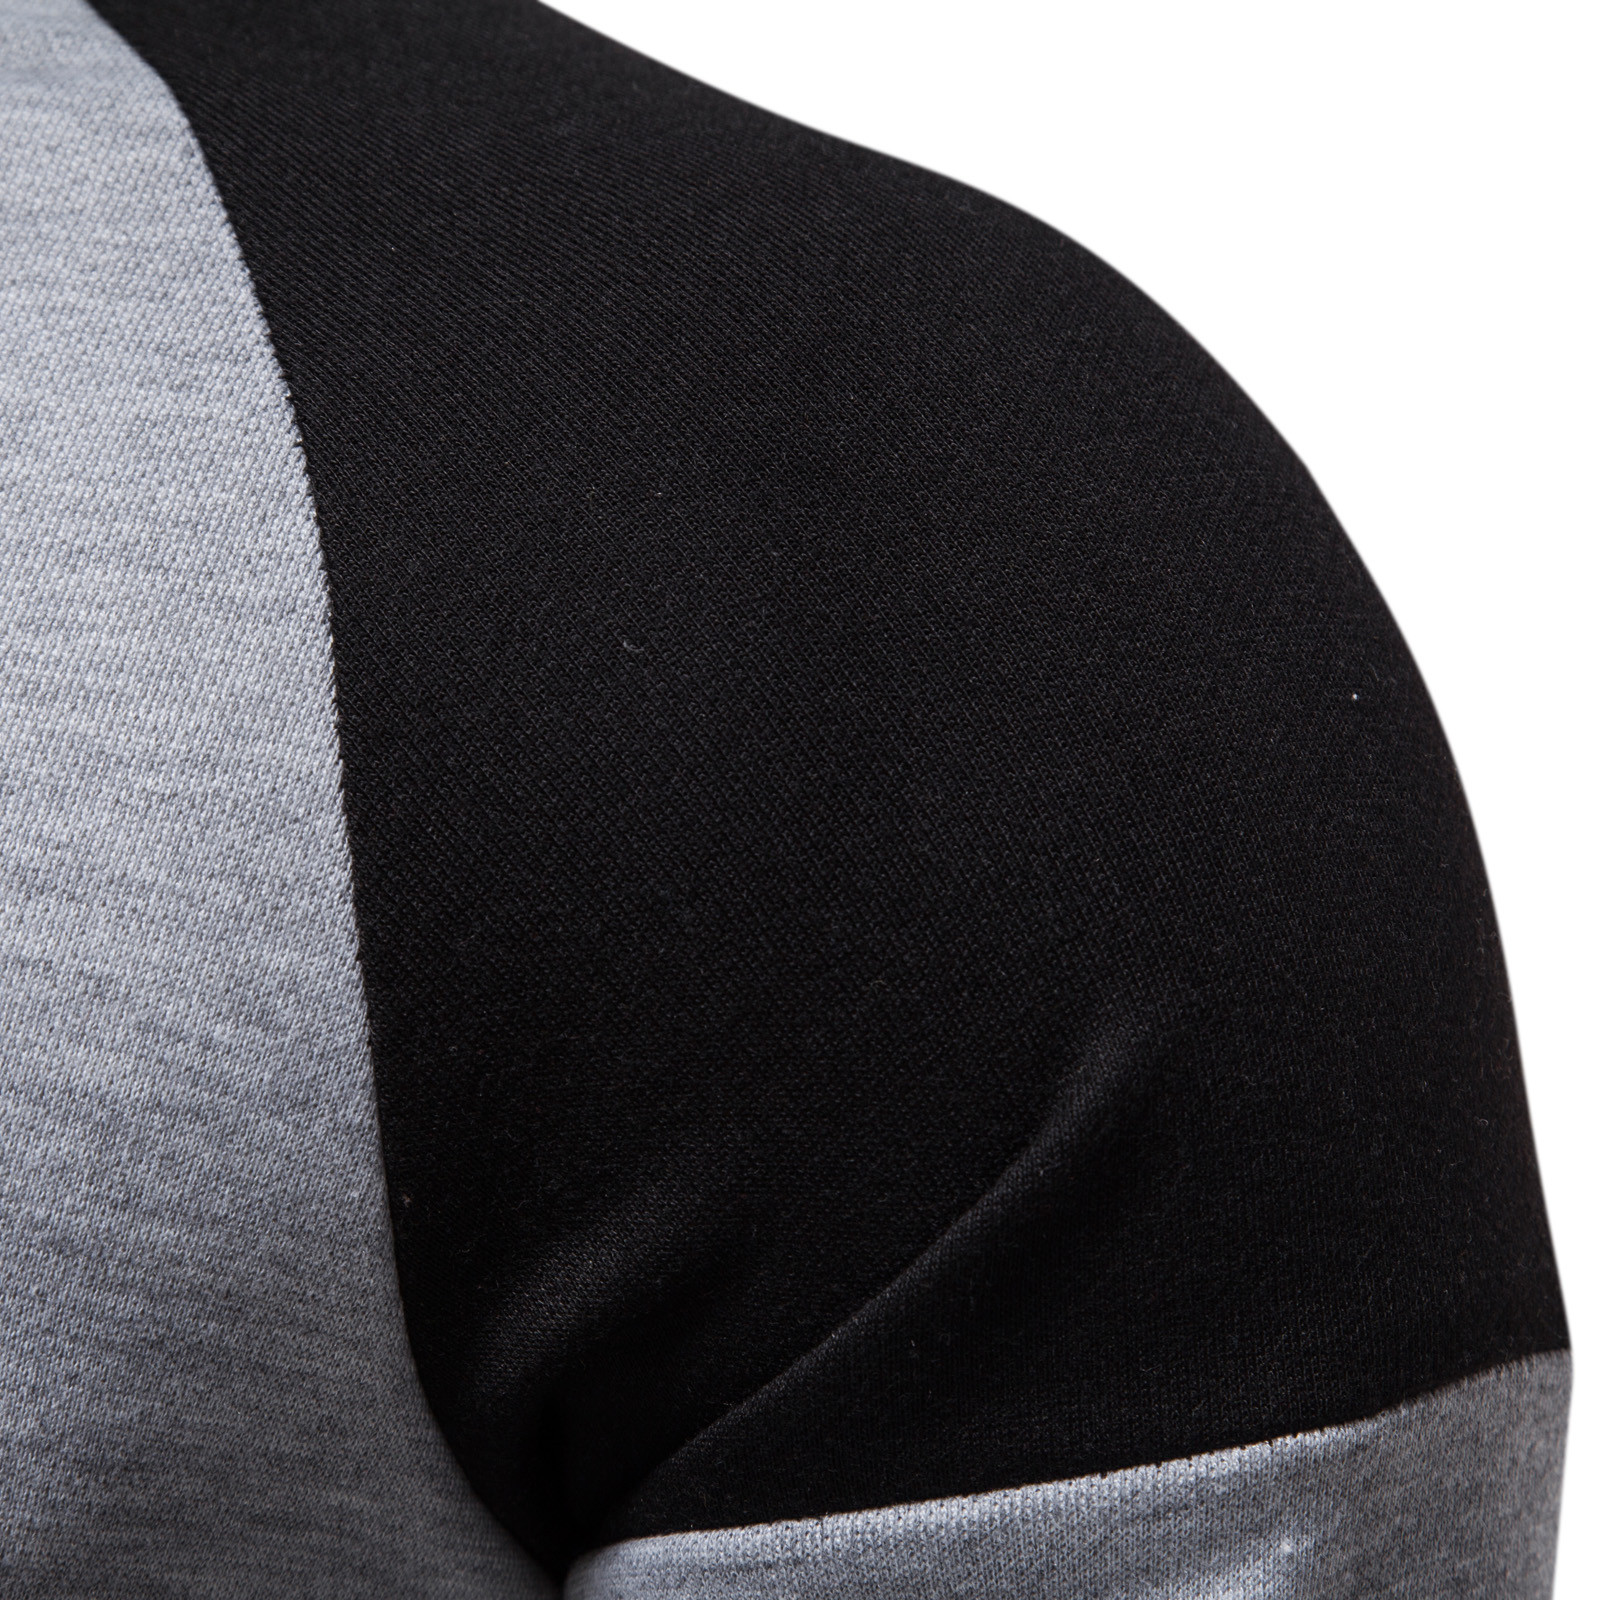 Sweat-shirt-manches-longues-col-rond-pour-hommes-chemises-surdimensionn-es-beau-patchwork-d-contract-chemisier